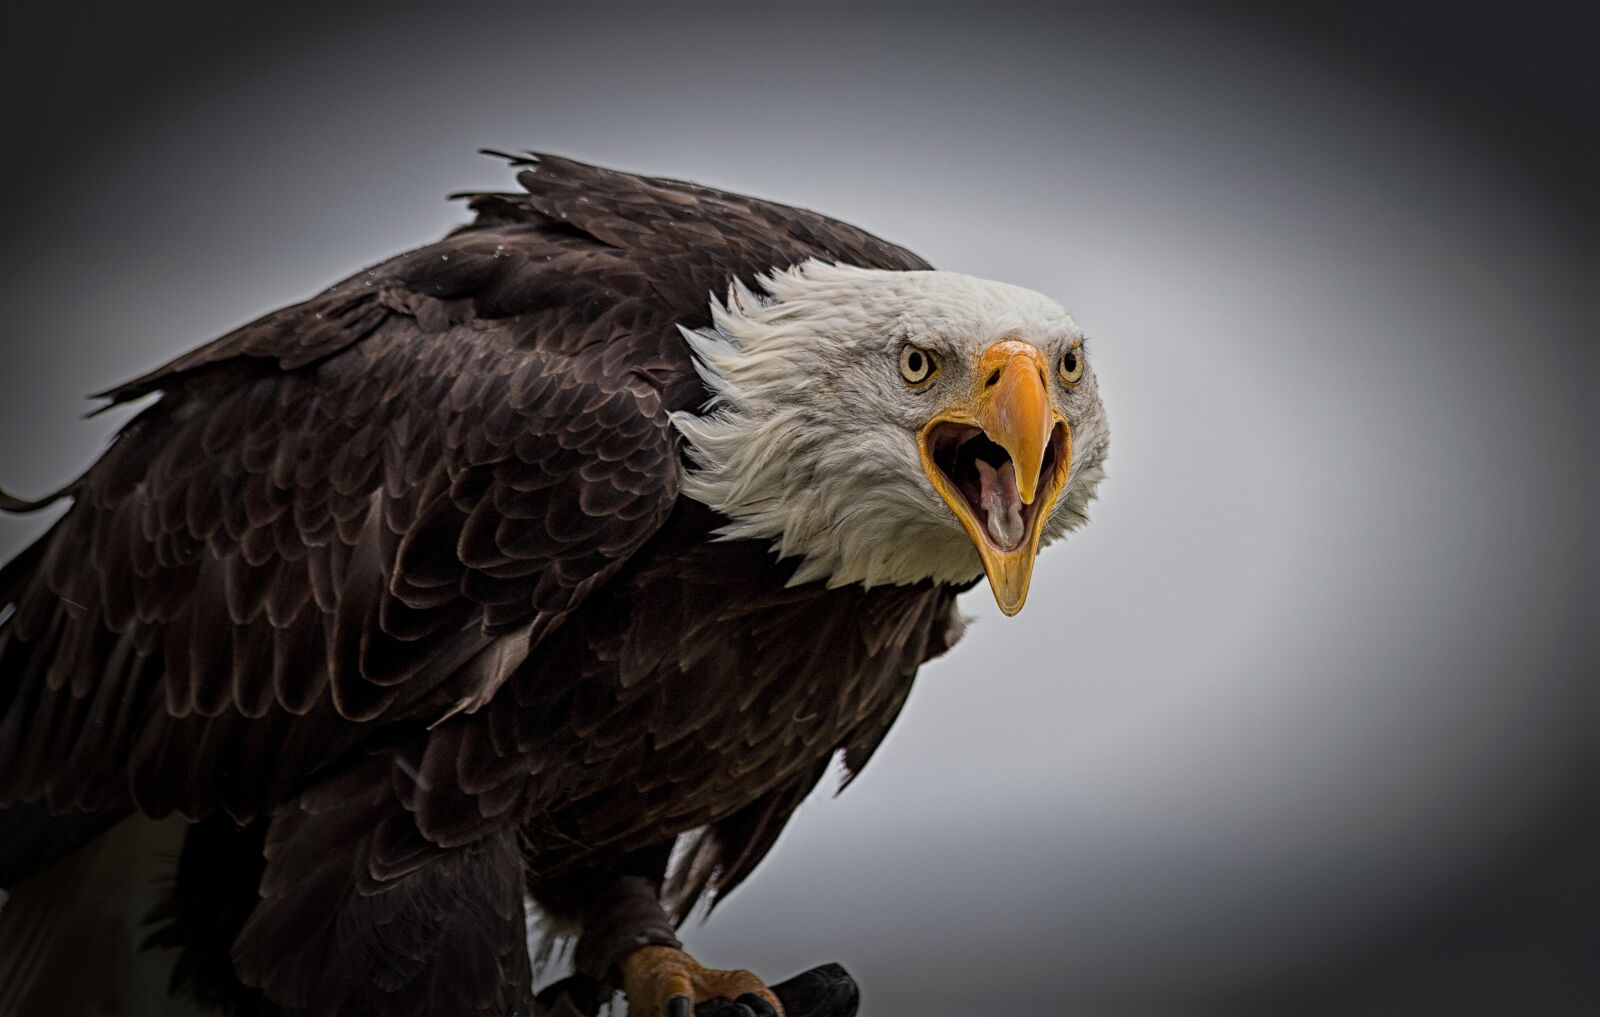 Canon EOS 6D Mark II sample photo. Bald eagle, bird, bird photography